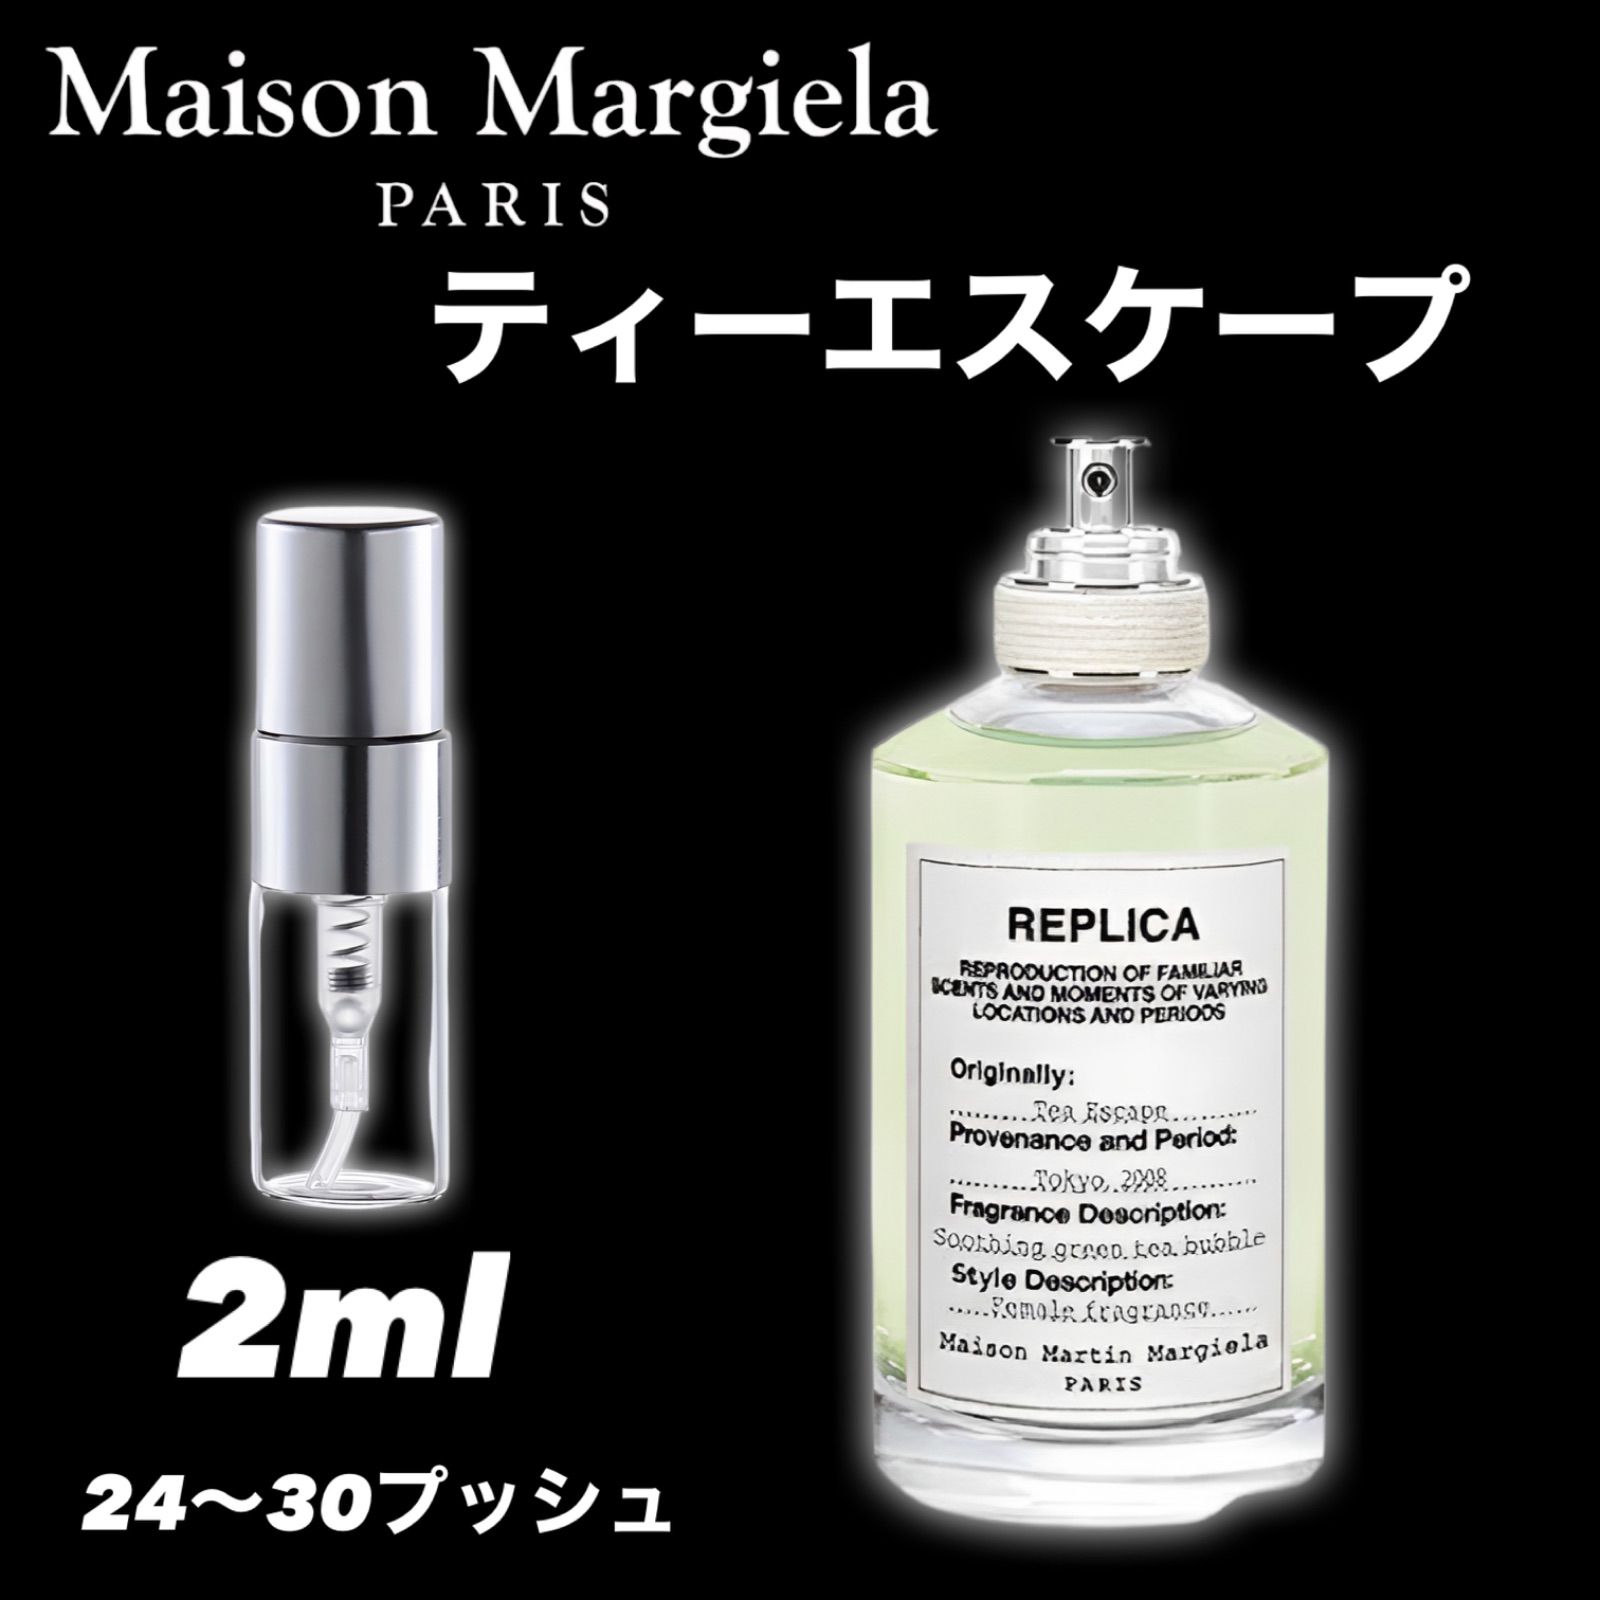 Maison Margiela メゾン マルジェラ レプリカ ティーエスケープ - ユニセックス